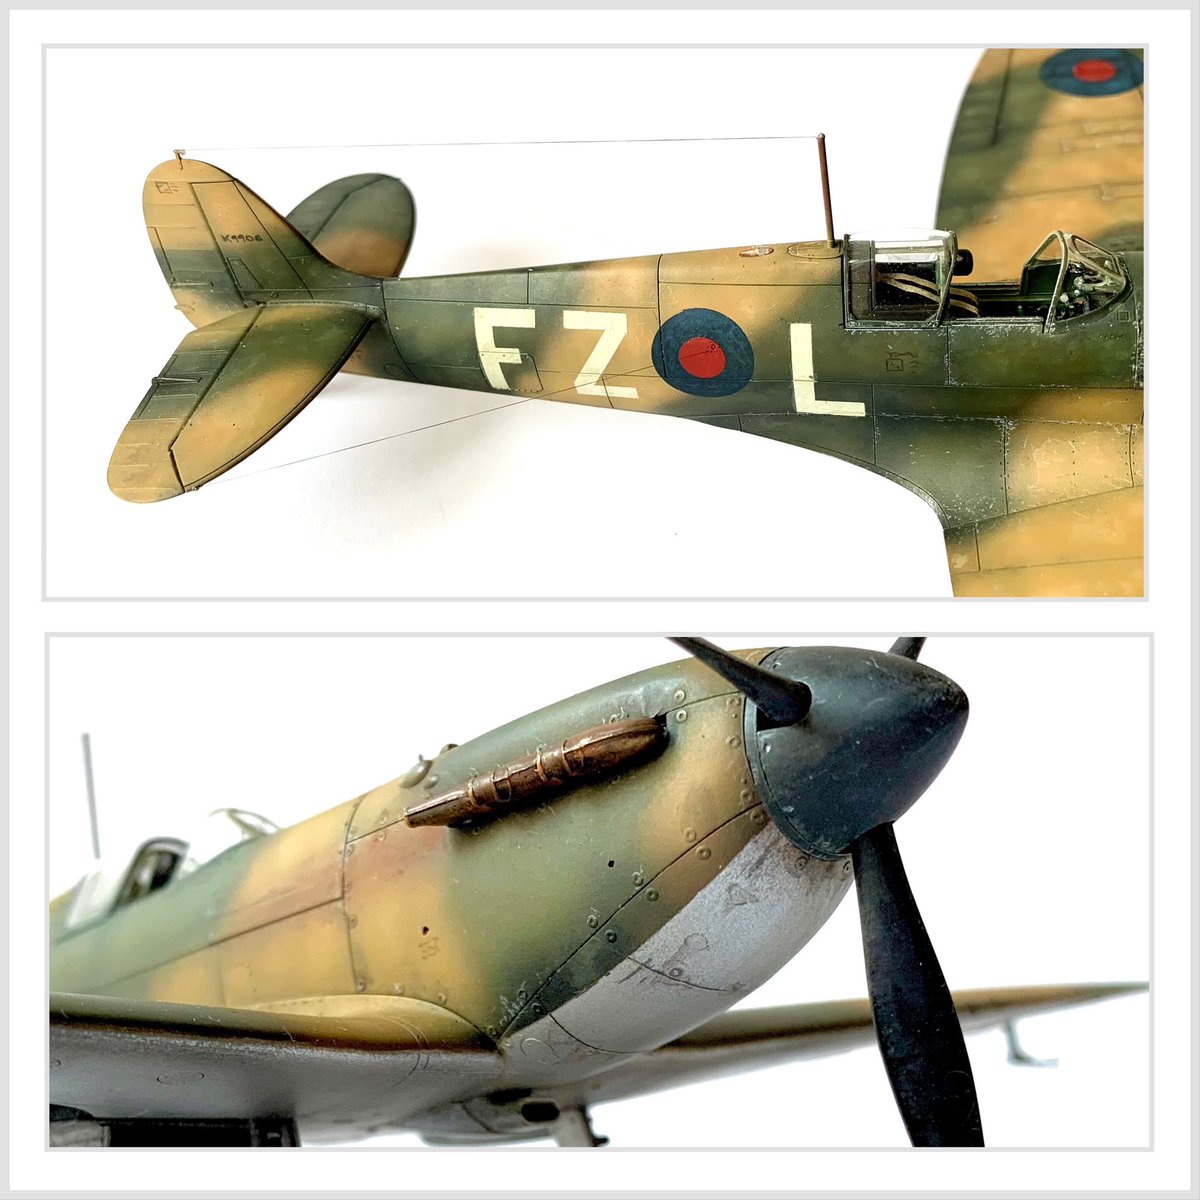 Final photos of this Tamiya 1/48th Spitfire Mk I.